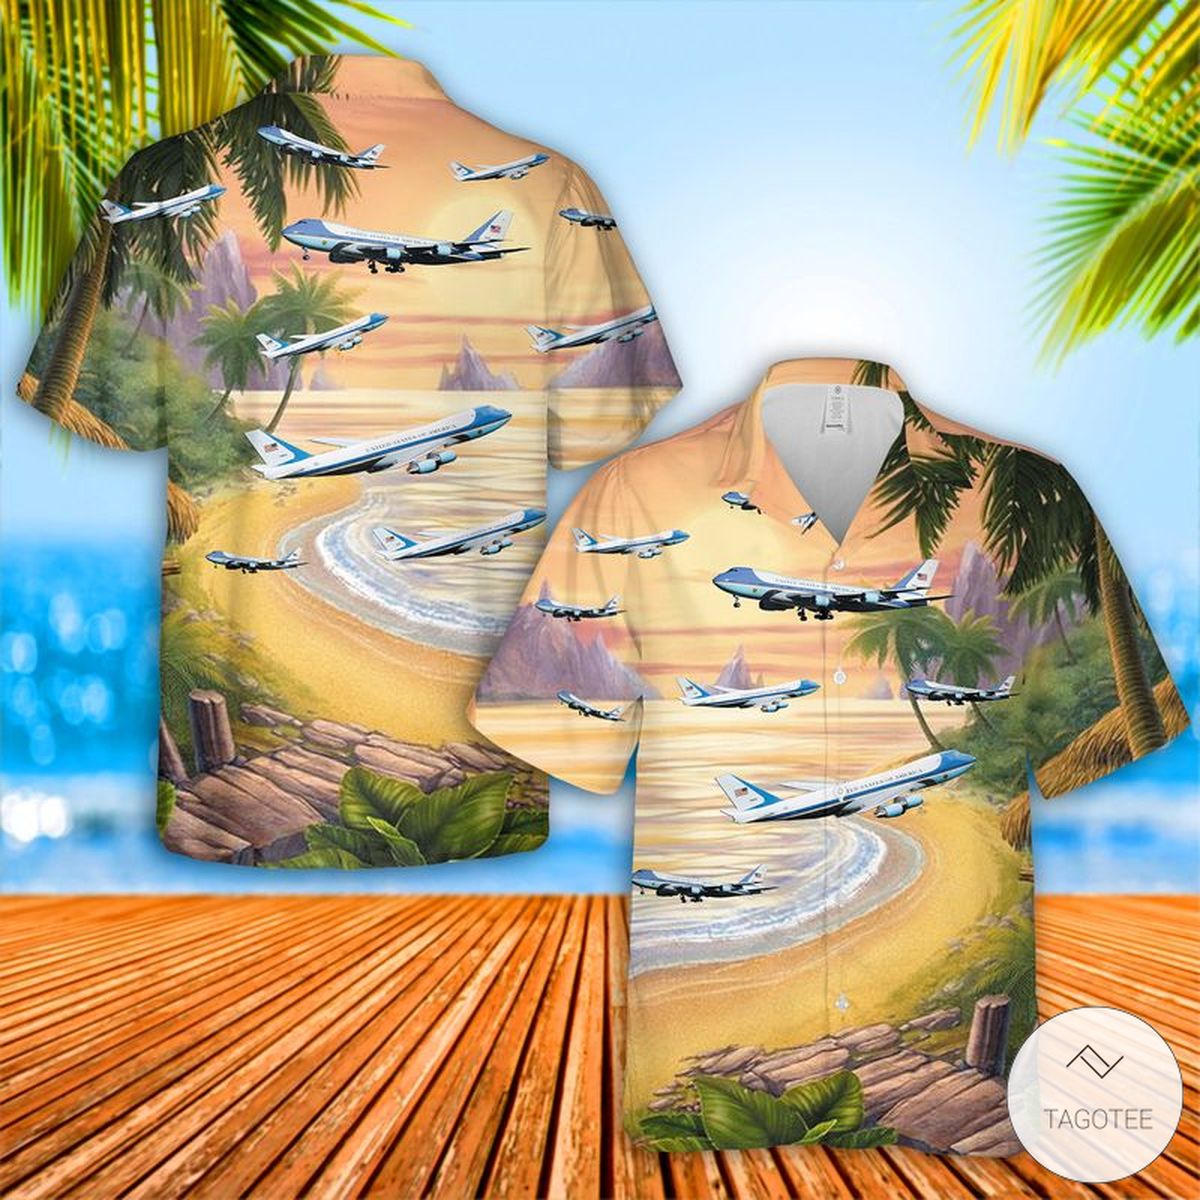 VC-25 Air Force One Hawaiian Shirt, Beach Shorts – TAGOTEE